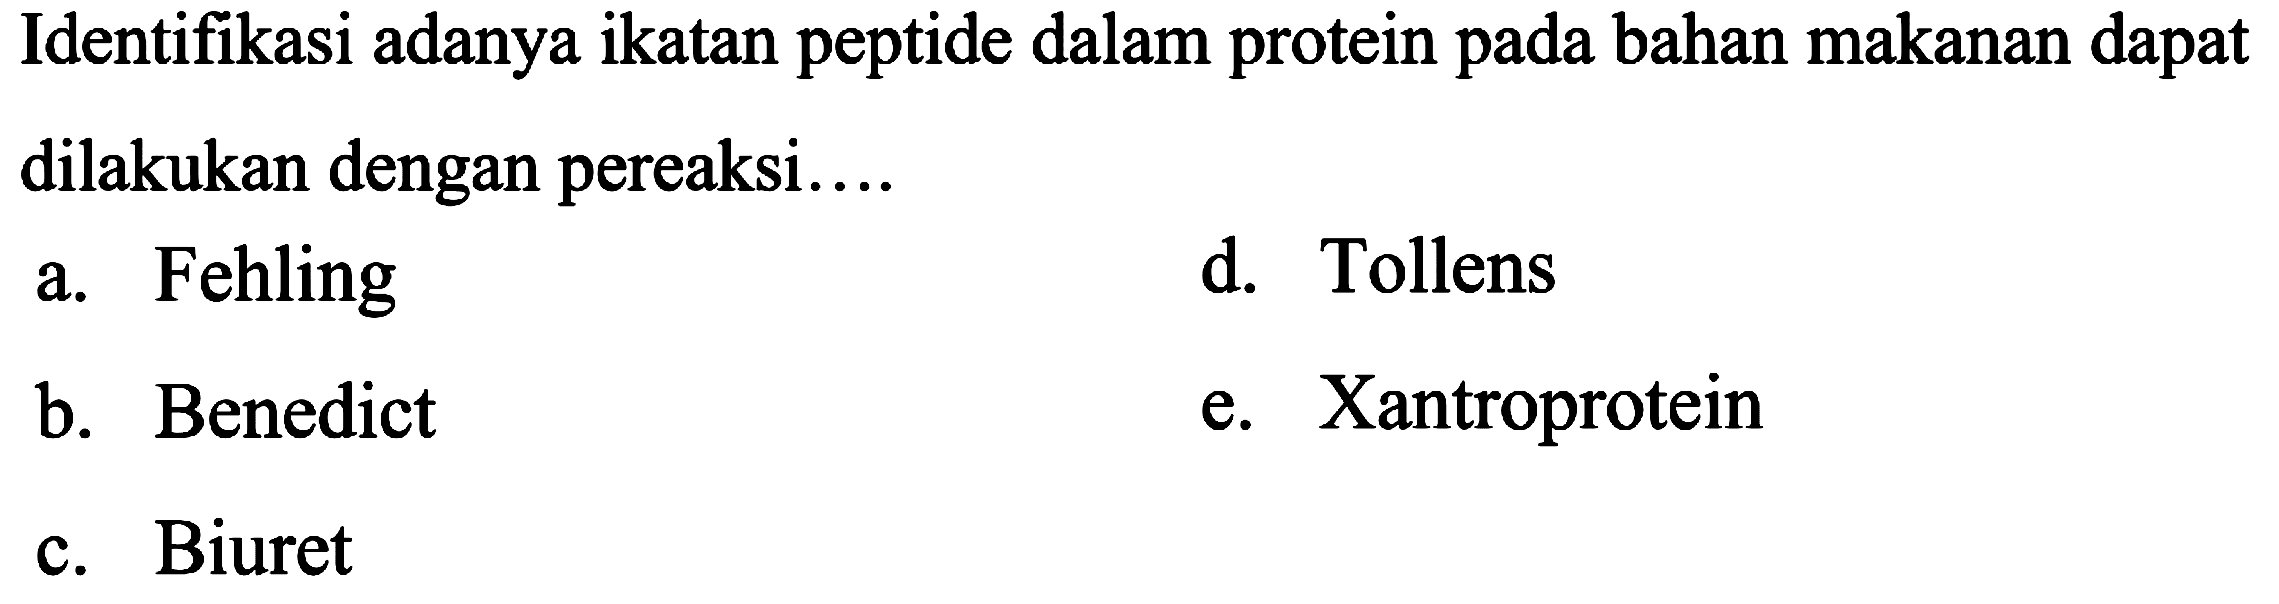 Identifikasi adanya ikatan peptide dalam protein pada bahan makanan dapat dilakukan dengan pereaksi....
a. Fehling
d. Tollens
b. Benedict
e. Xantroprotein
c. Biuret